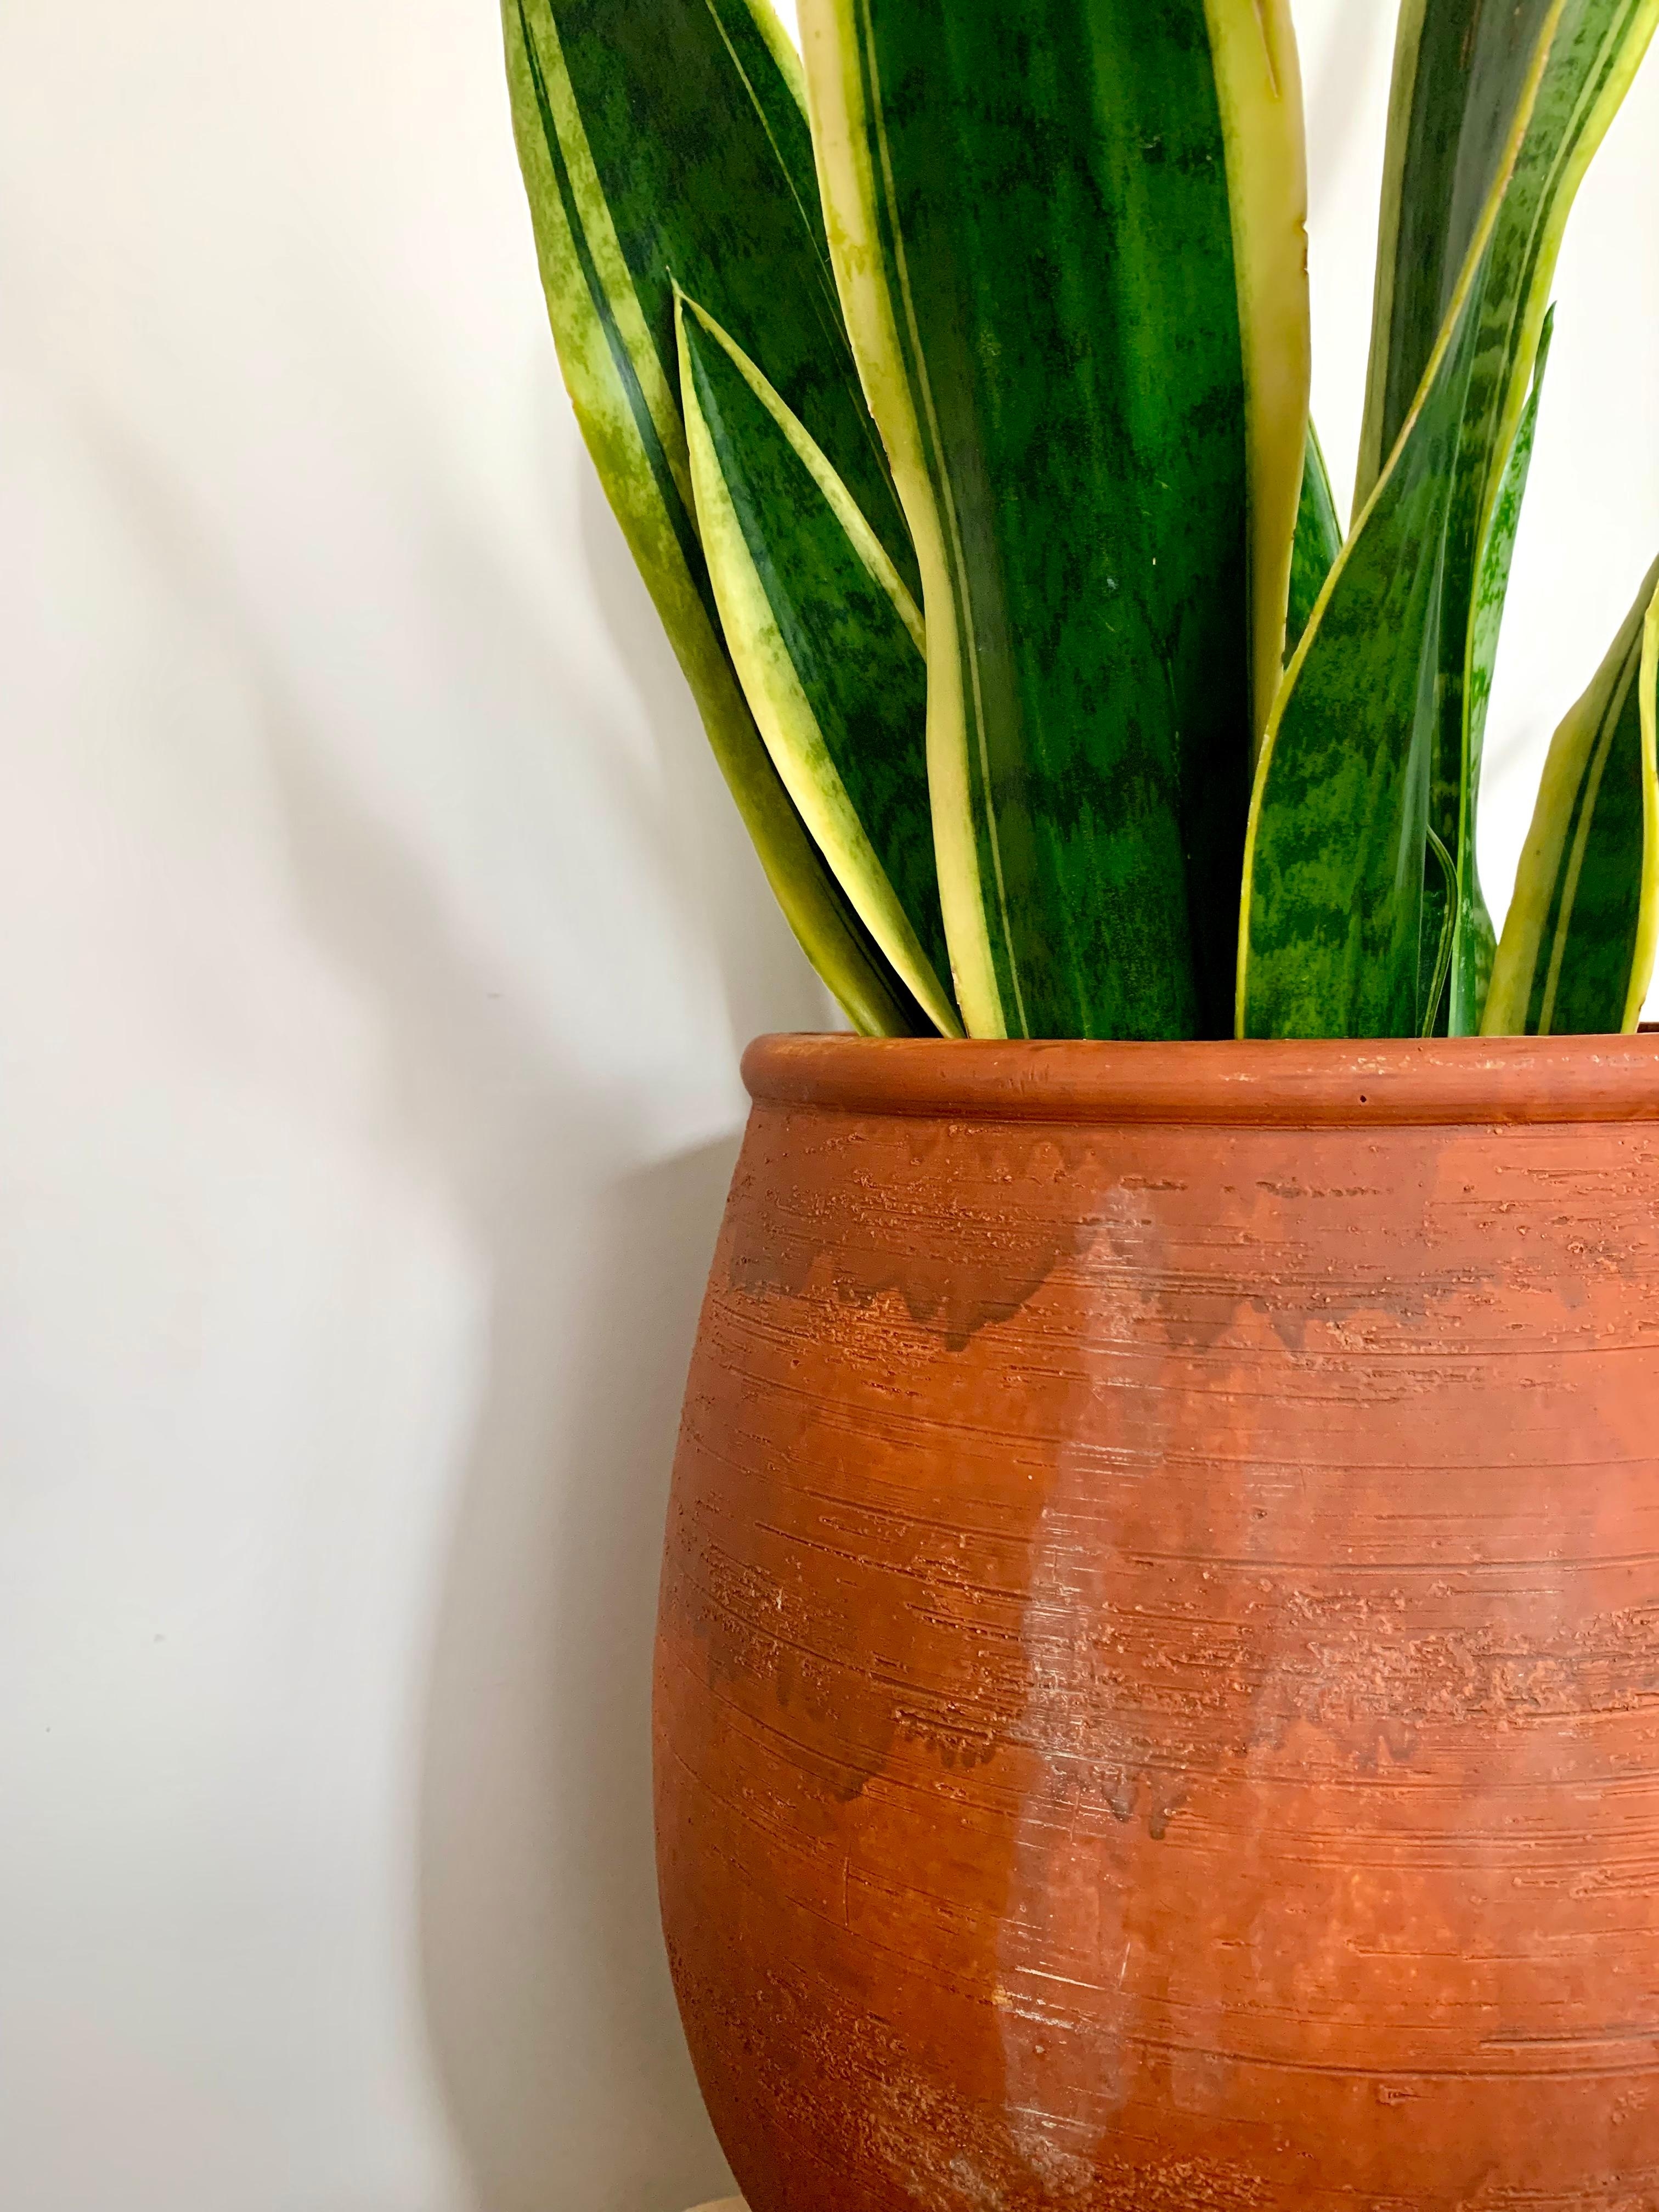 Neue Vase für meinen Bogenhanf 💚🪴
#plants #plantlovers #home #deco #interior #pflanzenliebe